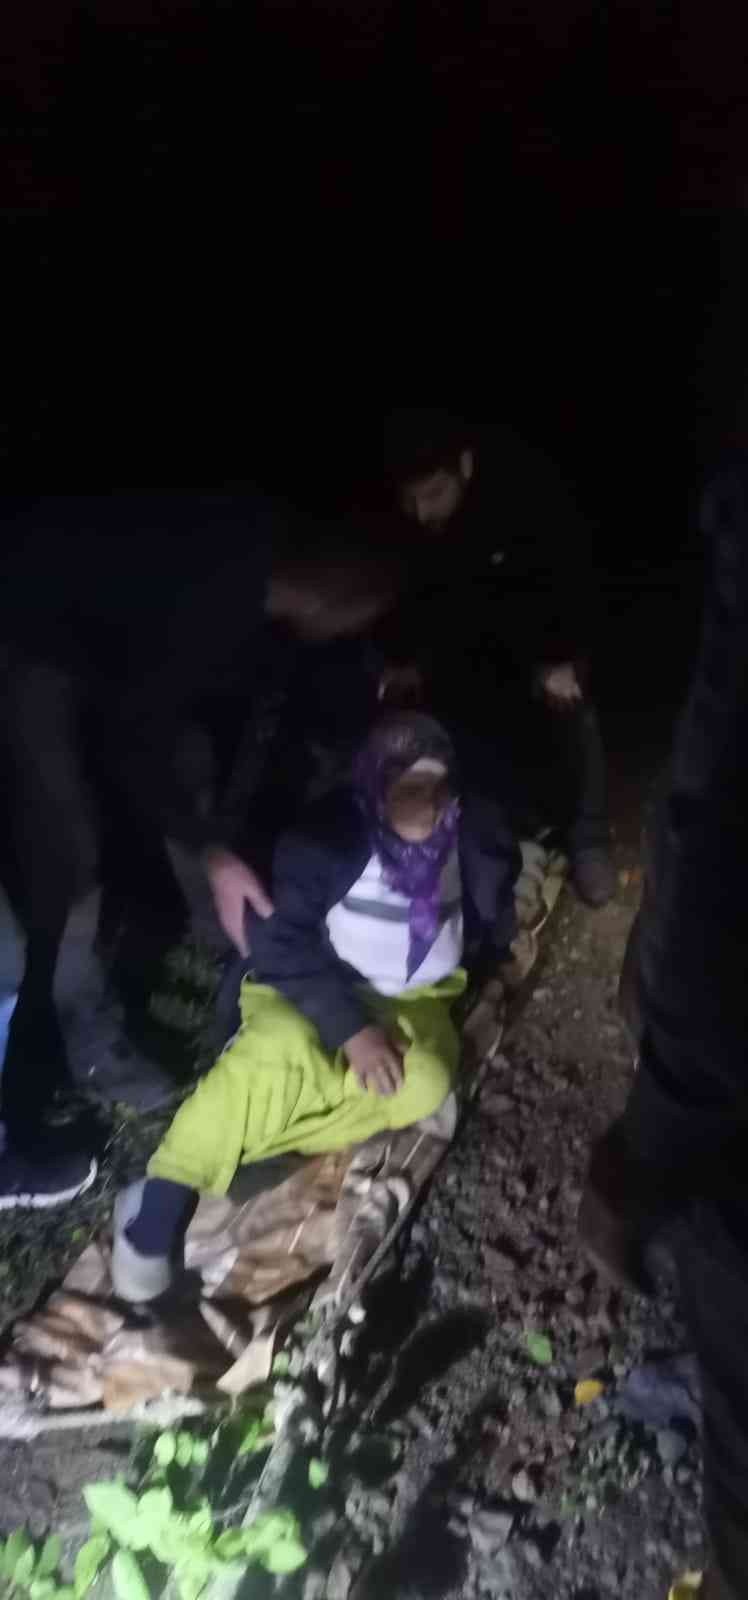 Mantar toplarken kaybolan kadın, dere yatağında bulundu #kastamonu